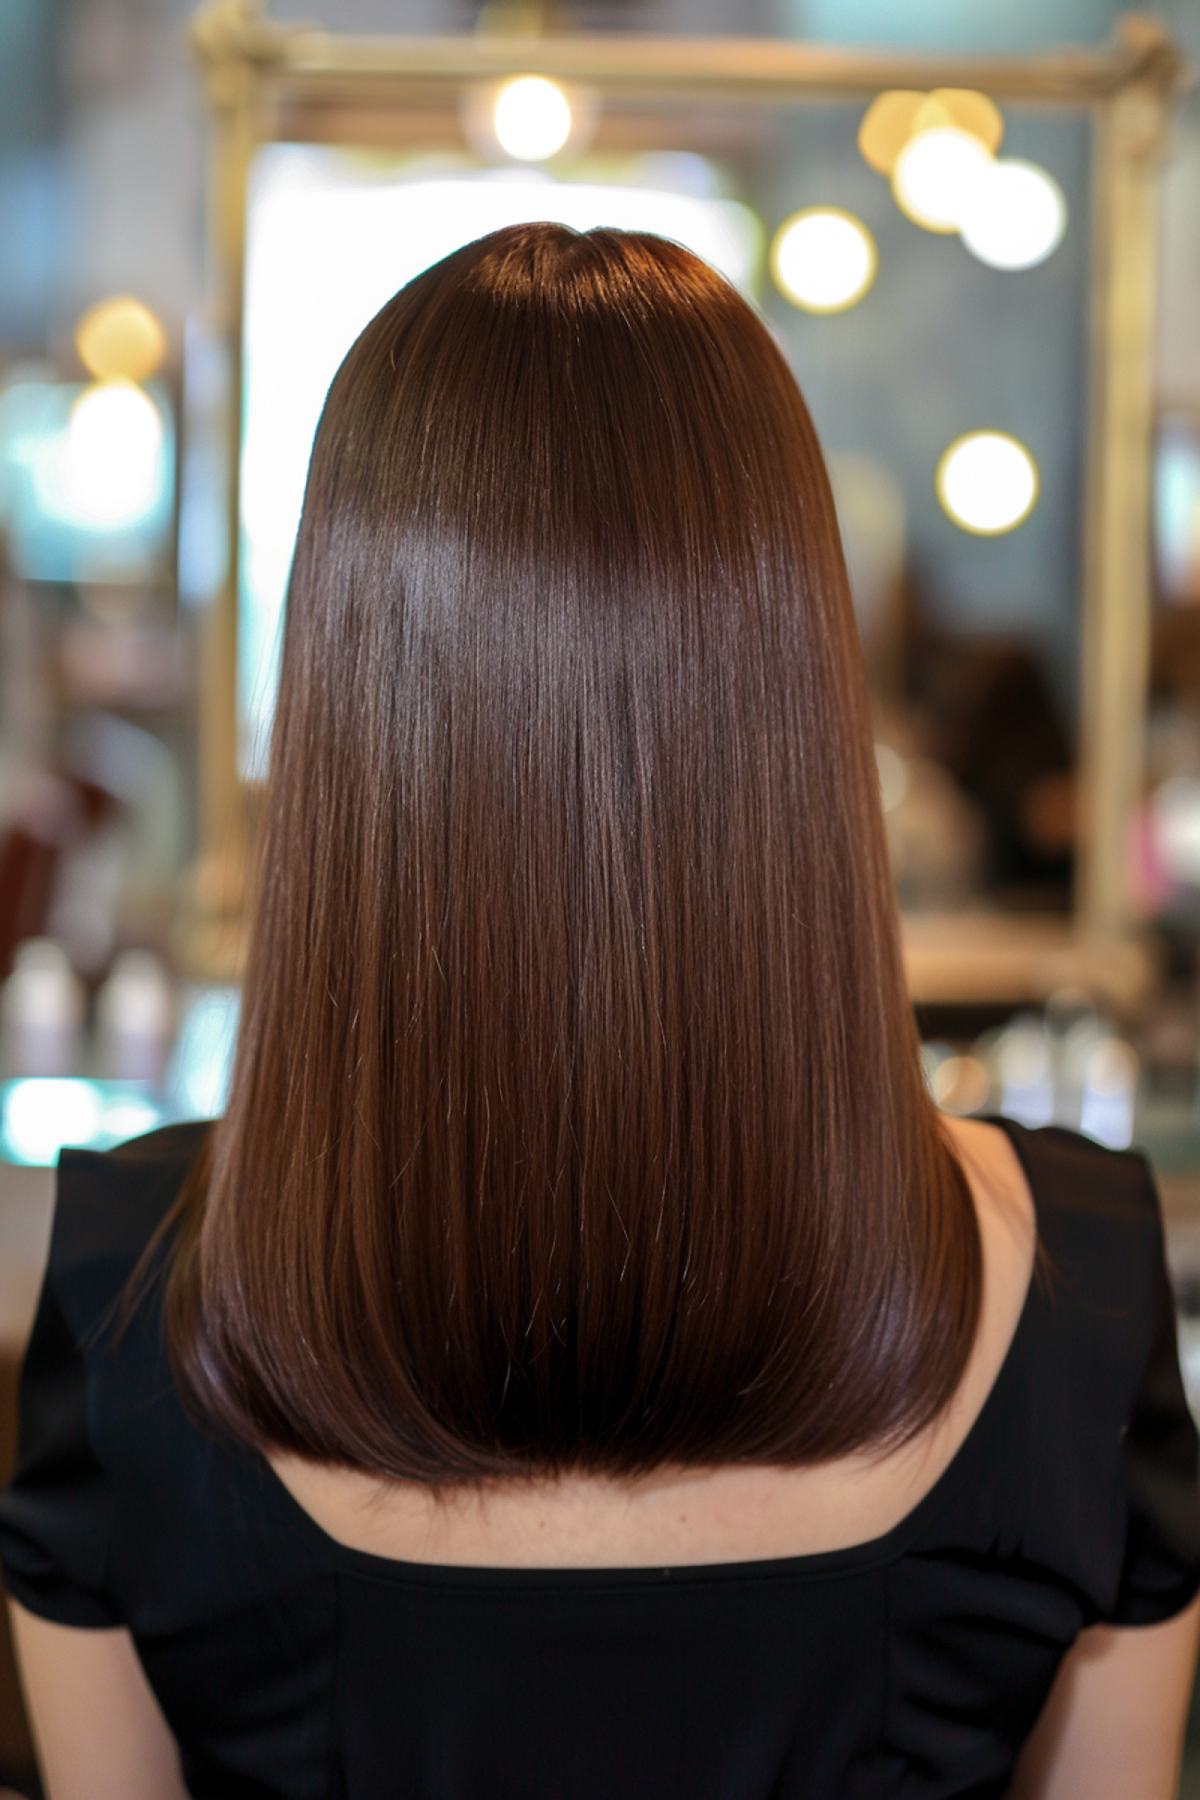 Woman with sleek medium-brown blunt haircut